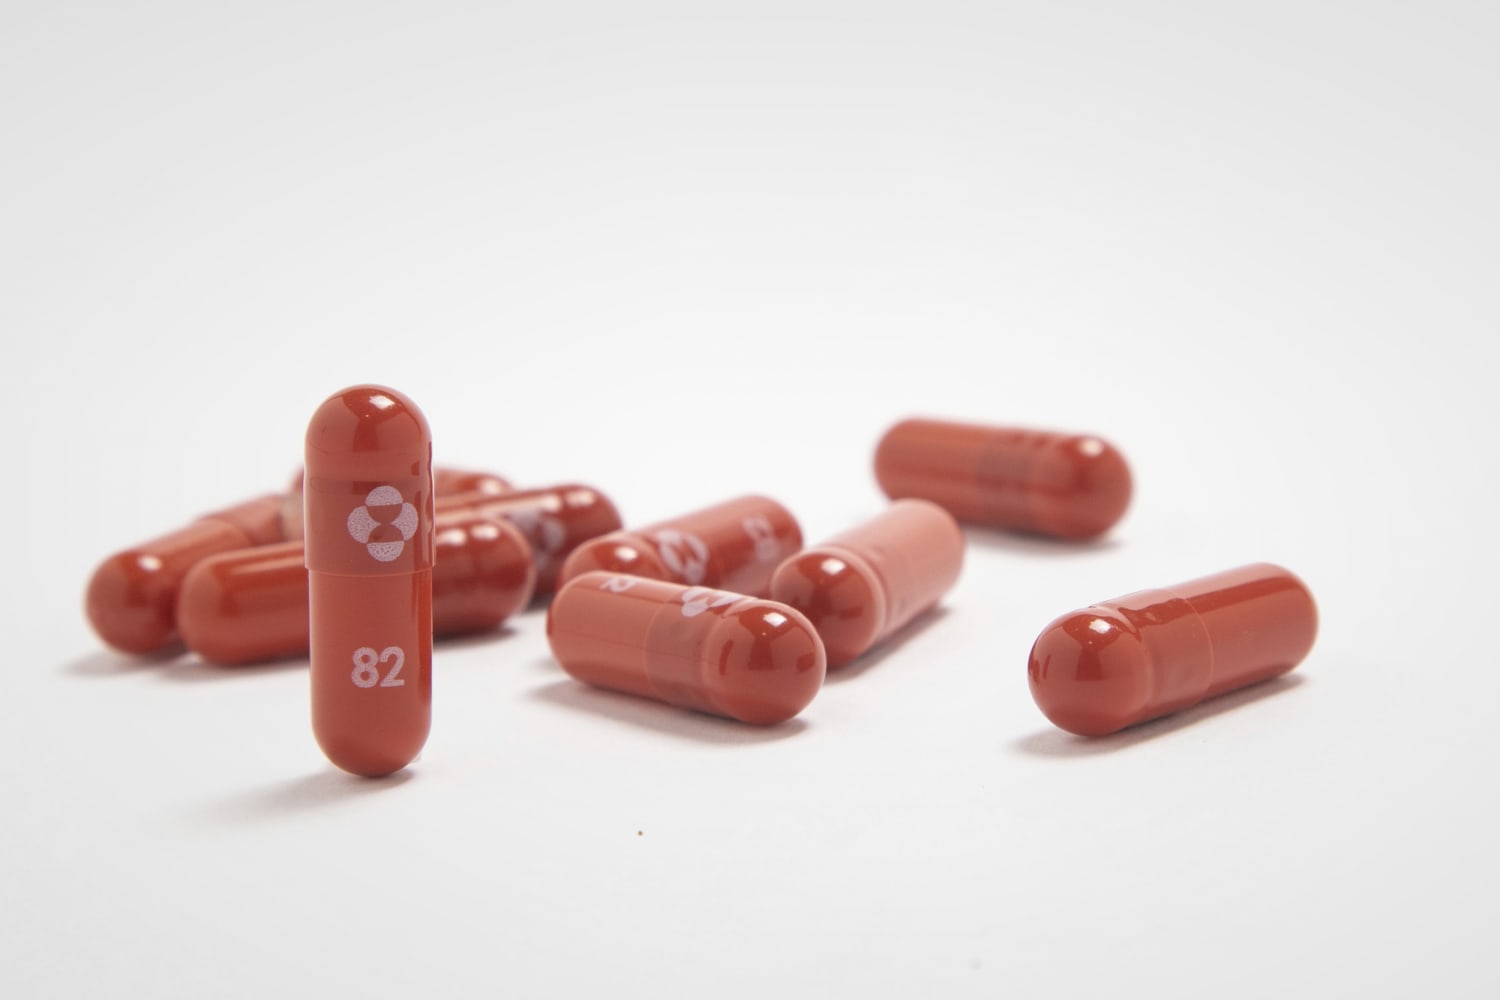 FDA advisory panel narrowly recommends Merck’s Covid pill for emergency use